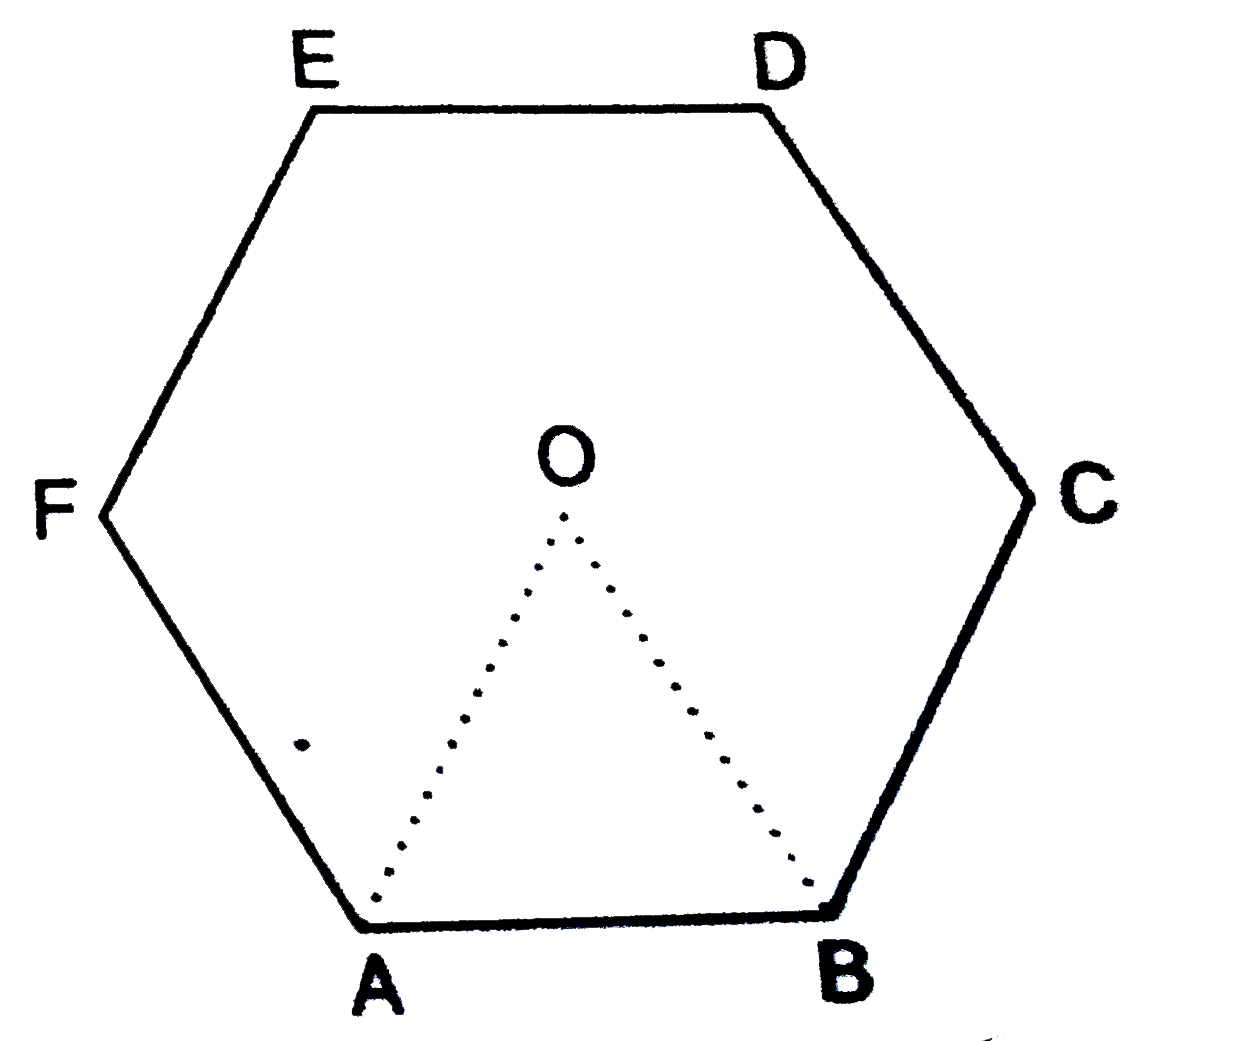 चित्र में, ABCDEF एक षटभुज है जिसका केन्द्र O है | यदि त्रिभुज OAB का क्षेत्रफल 9 वर्ग सेमी. हो, तो      षटभुज तथा